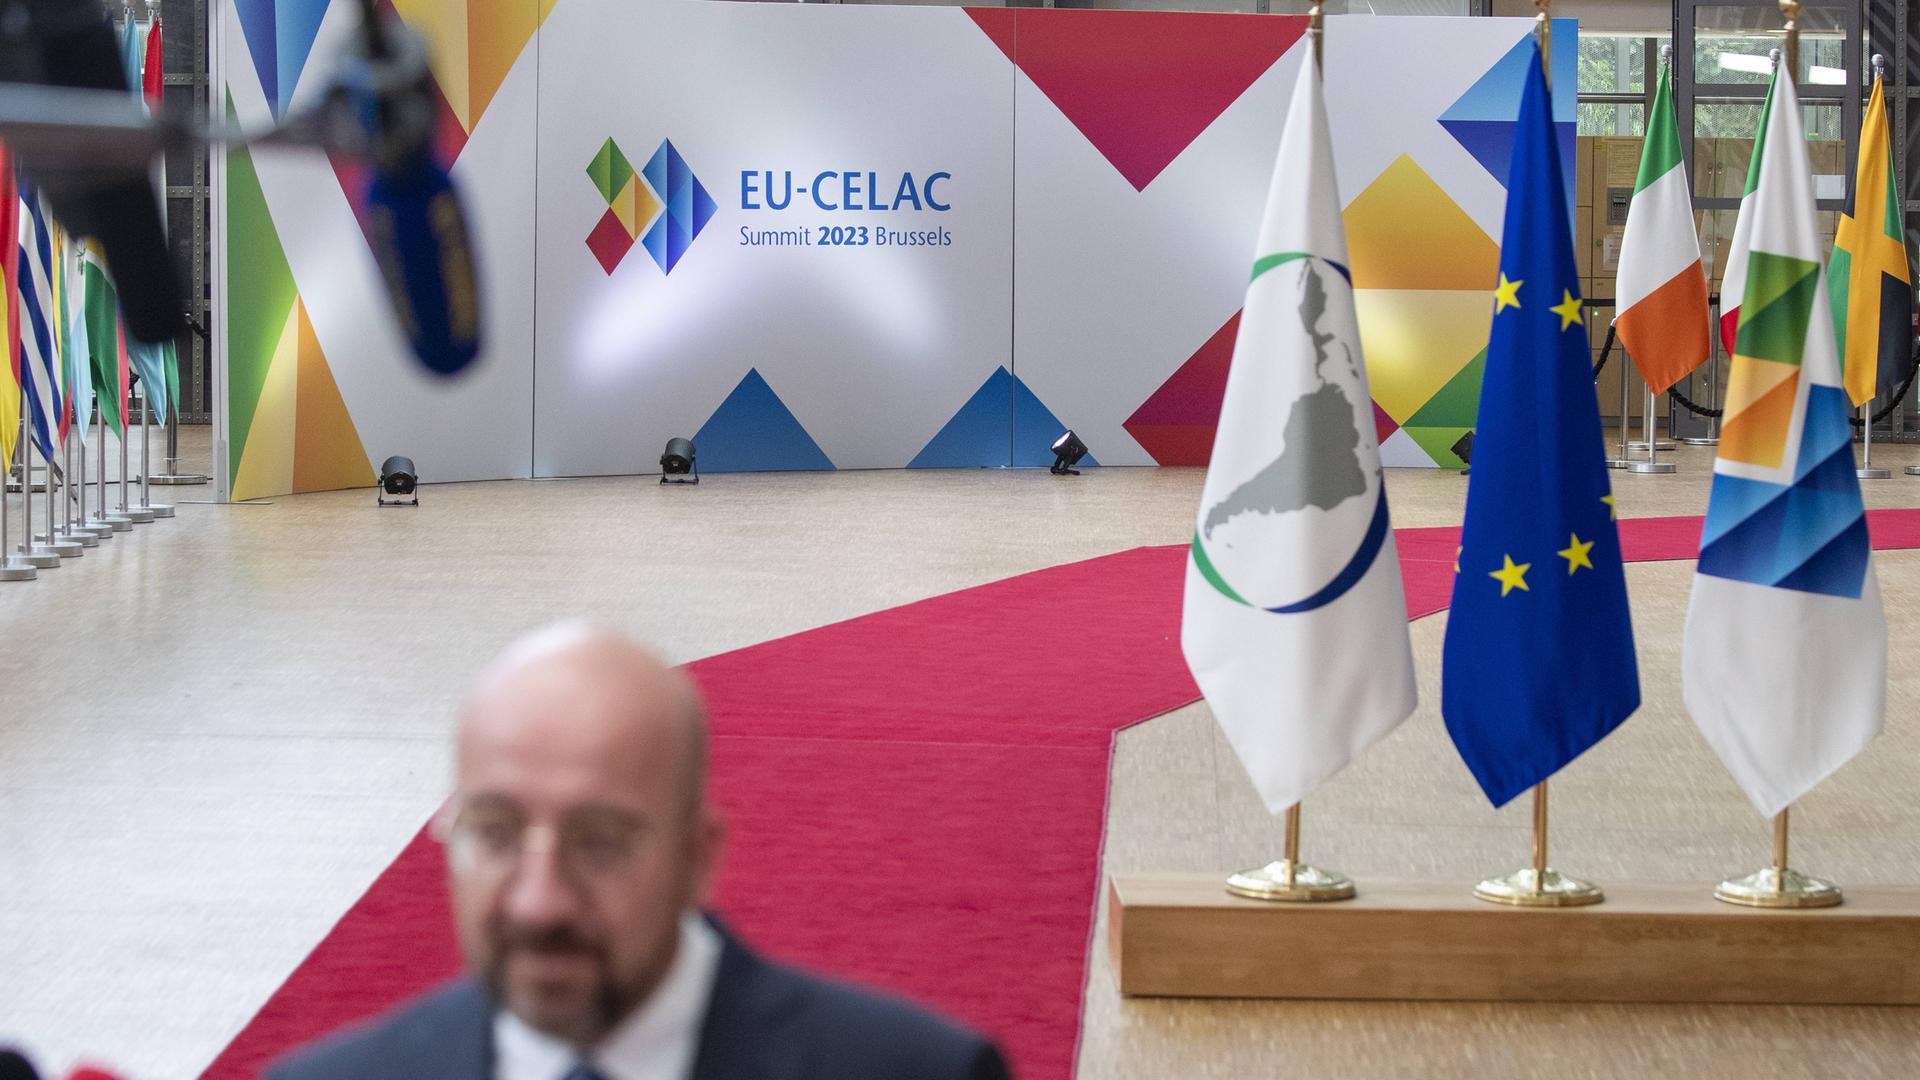 Der Präsident des Europäischen Rates, Charles Michel, trifft zum Gipfeltreffen zwischen der EU und der CELAC - Gemeinschaft lateinamerikanischer und karibischer Staaten - in Brüssel ein.